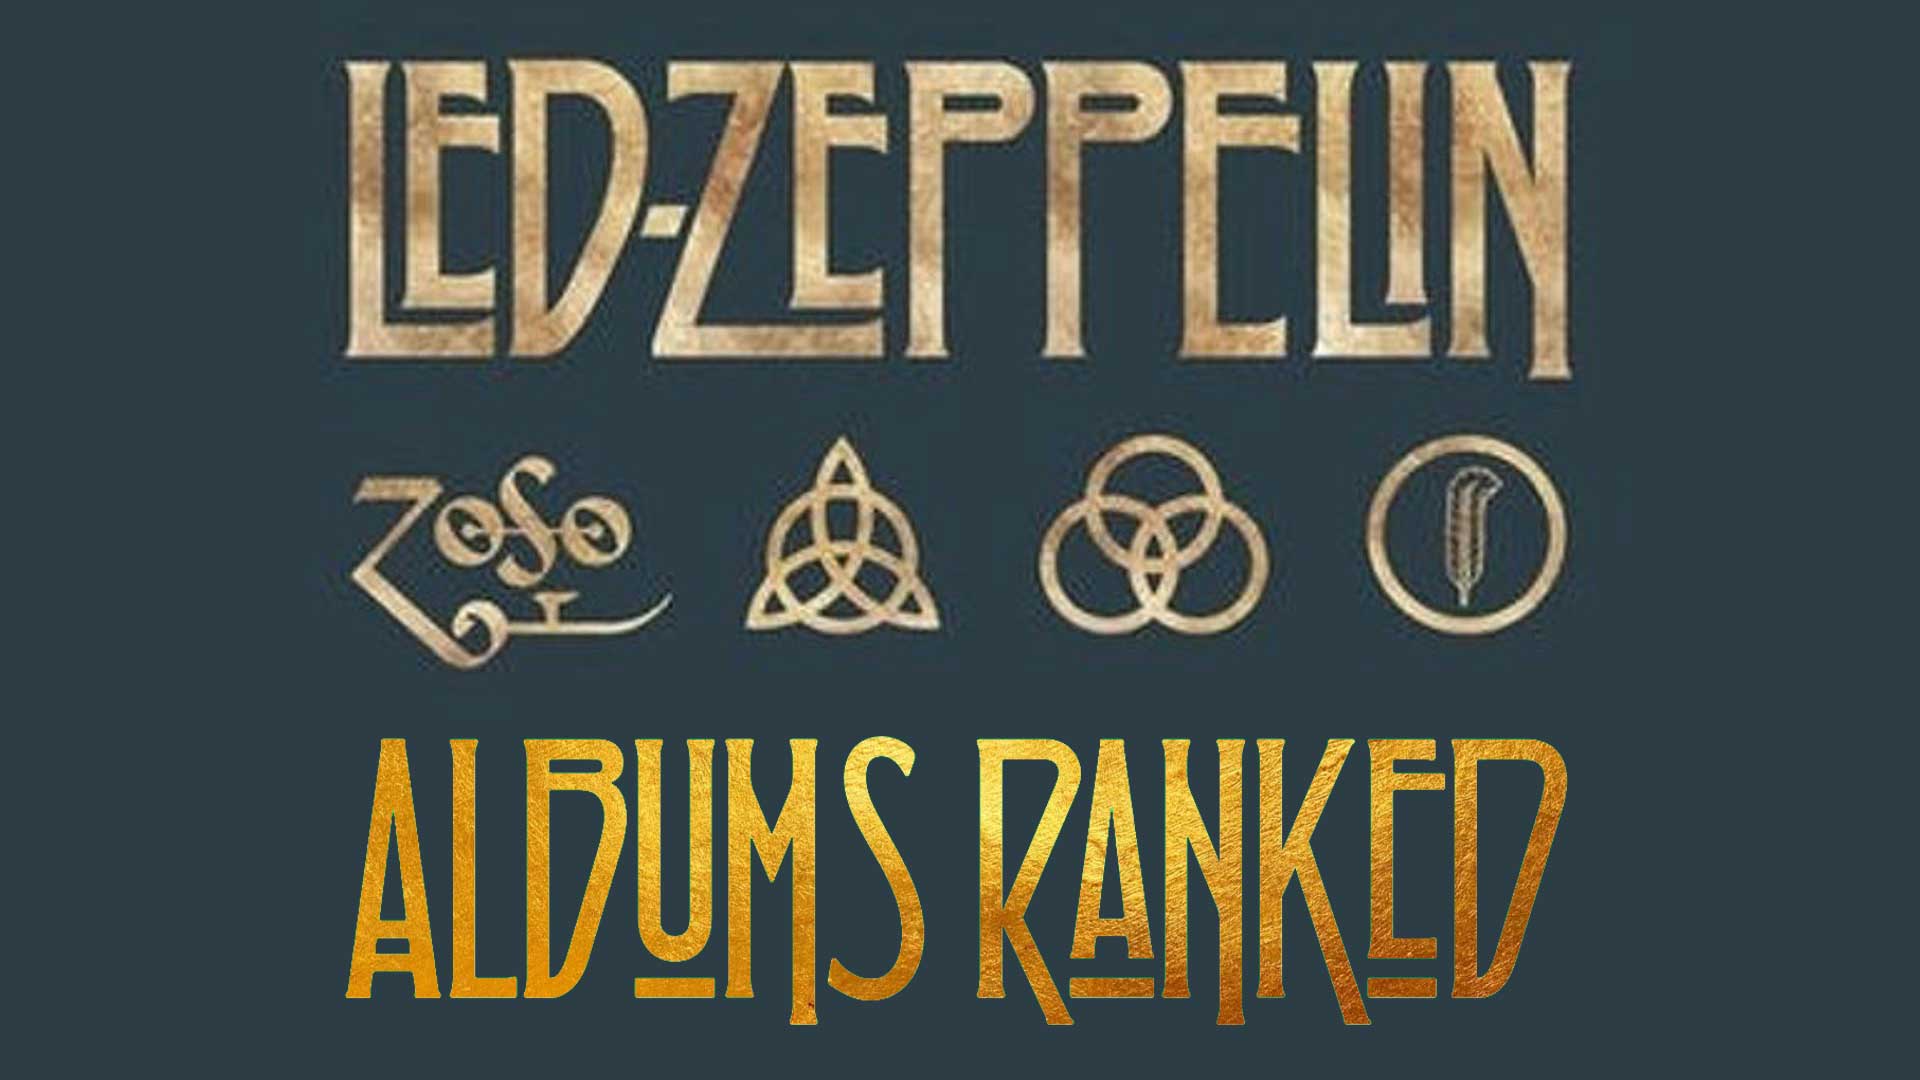 Led Zeppelin I Remastered Original